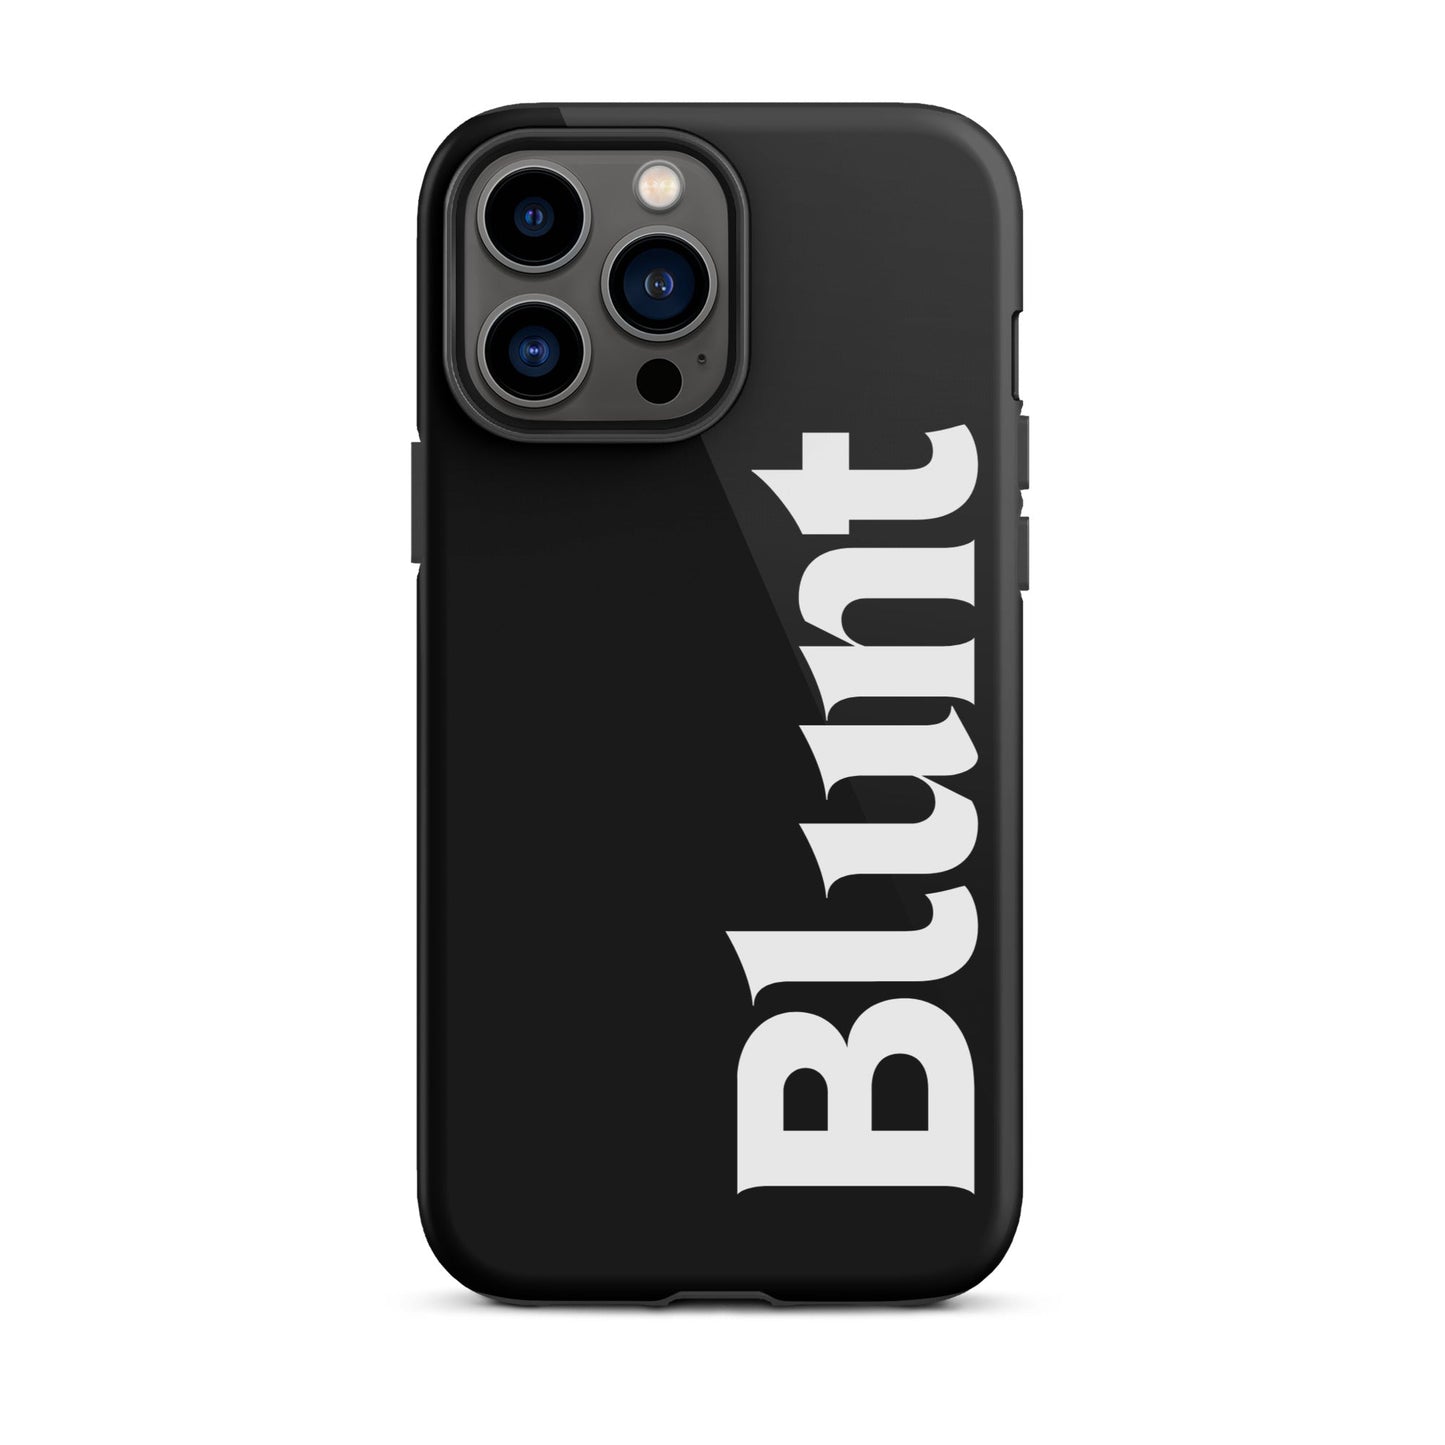 Blunt iPhone Case - blunt cases